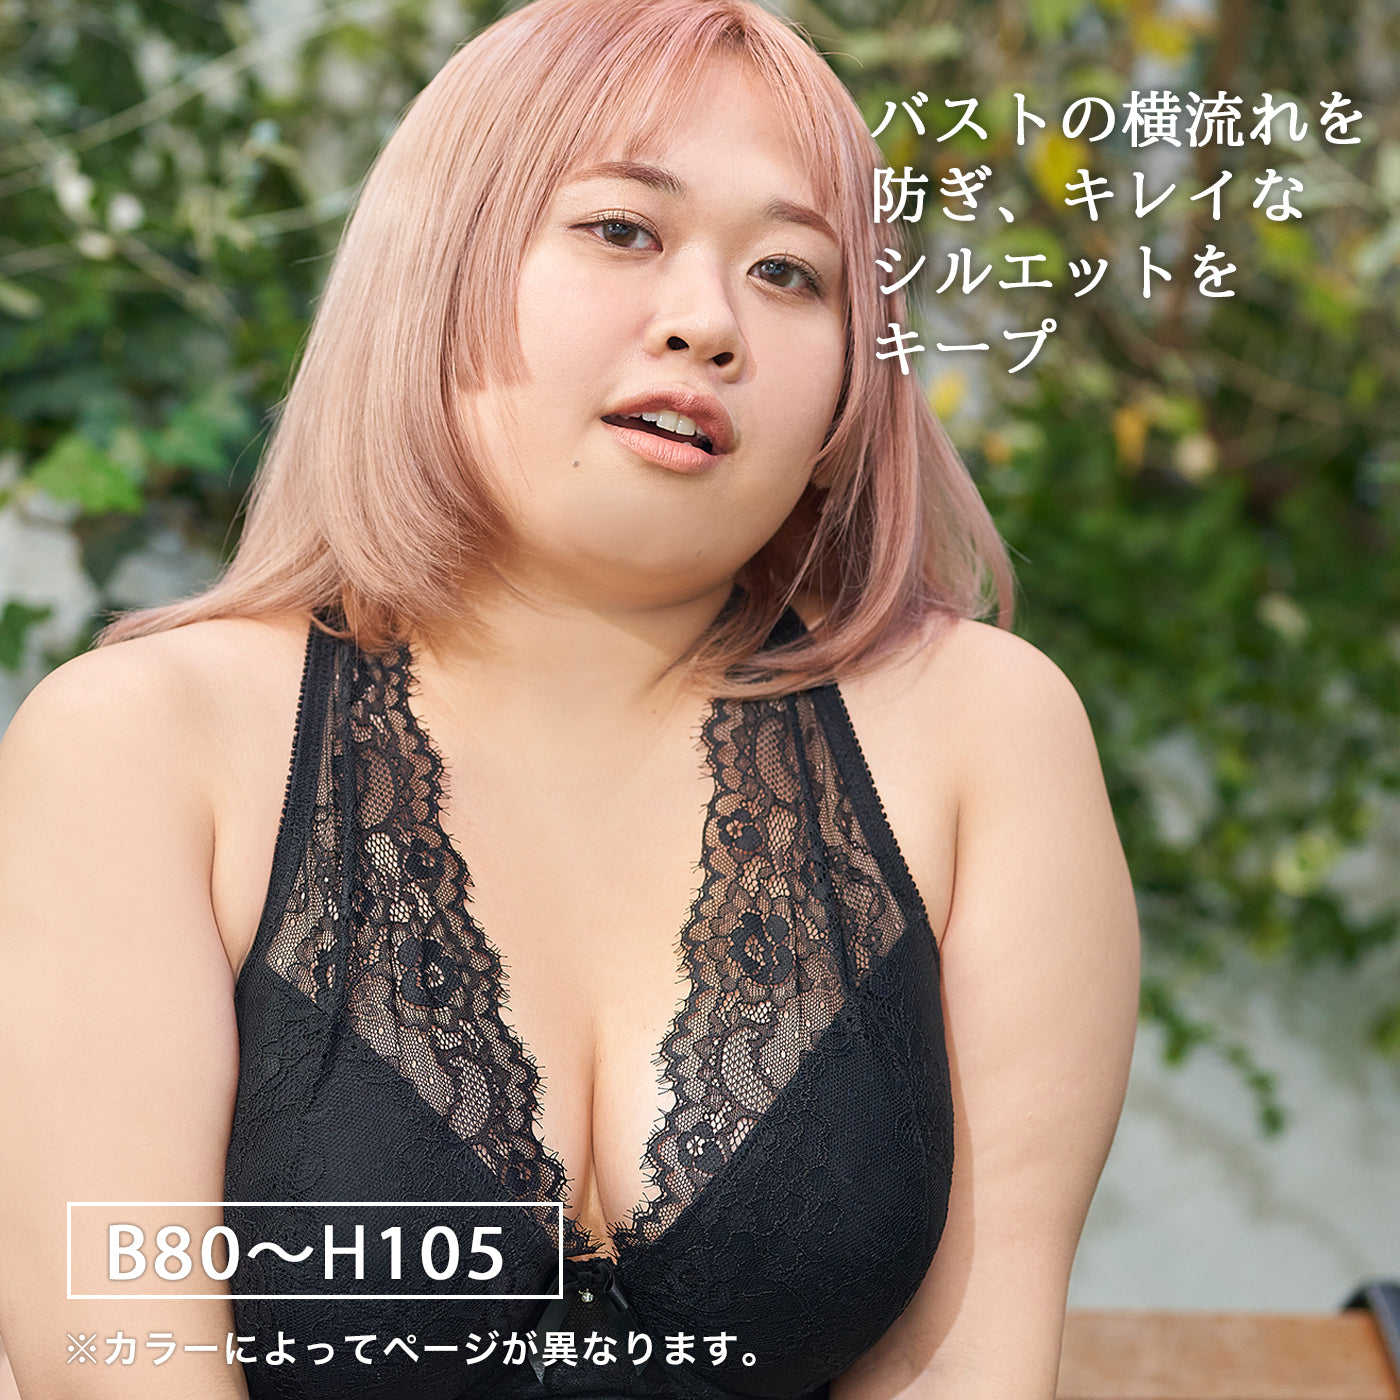 【B80〜H105】しっかりホールド・美胸キーパーフルカップブラ(ブラック)_90117-51